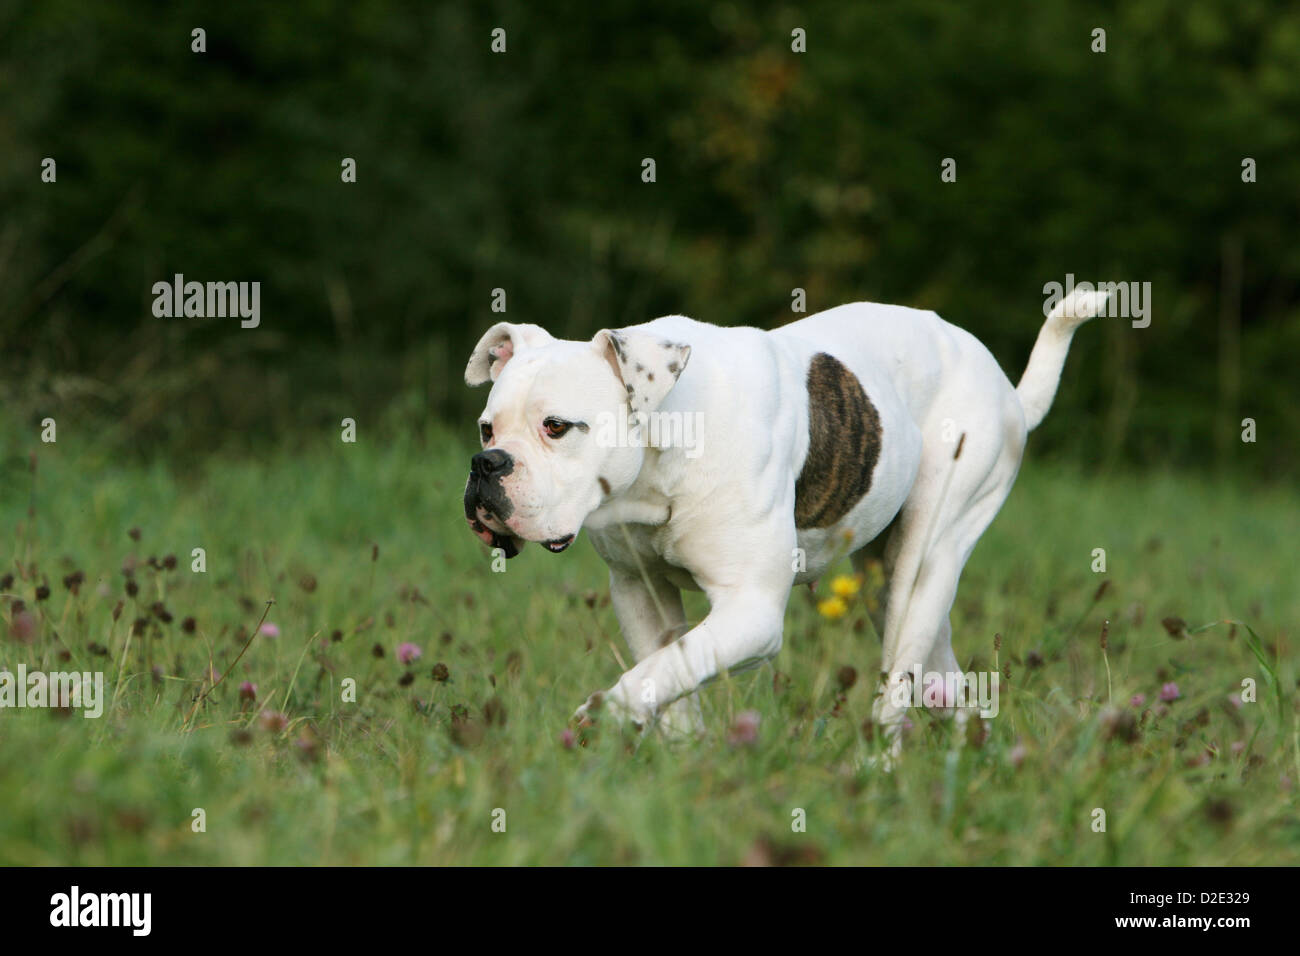 Cane bulldog americano / Bully cucciolo camminando in un prato Foto Stock